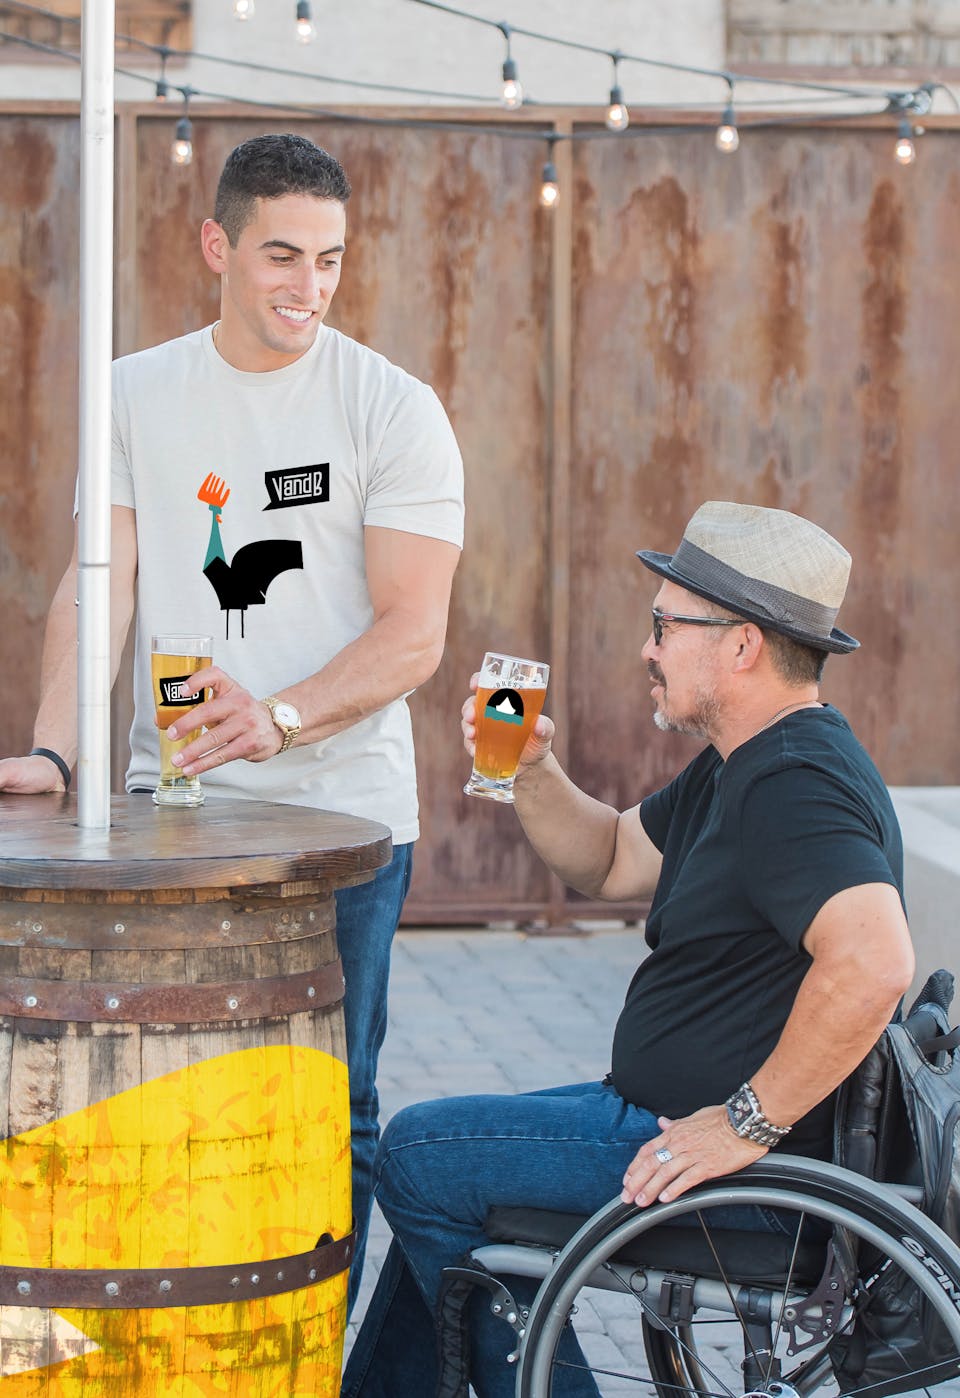 Deux personnes dégustent à une terrasse des bières V and B.